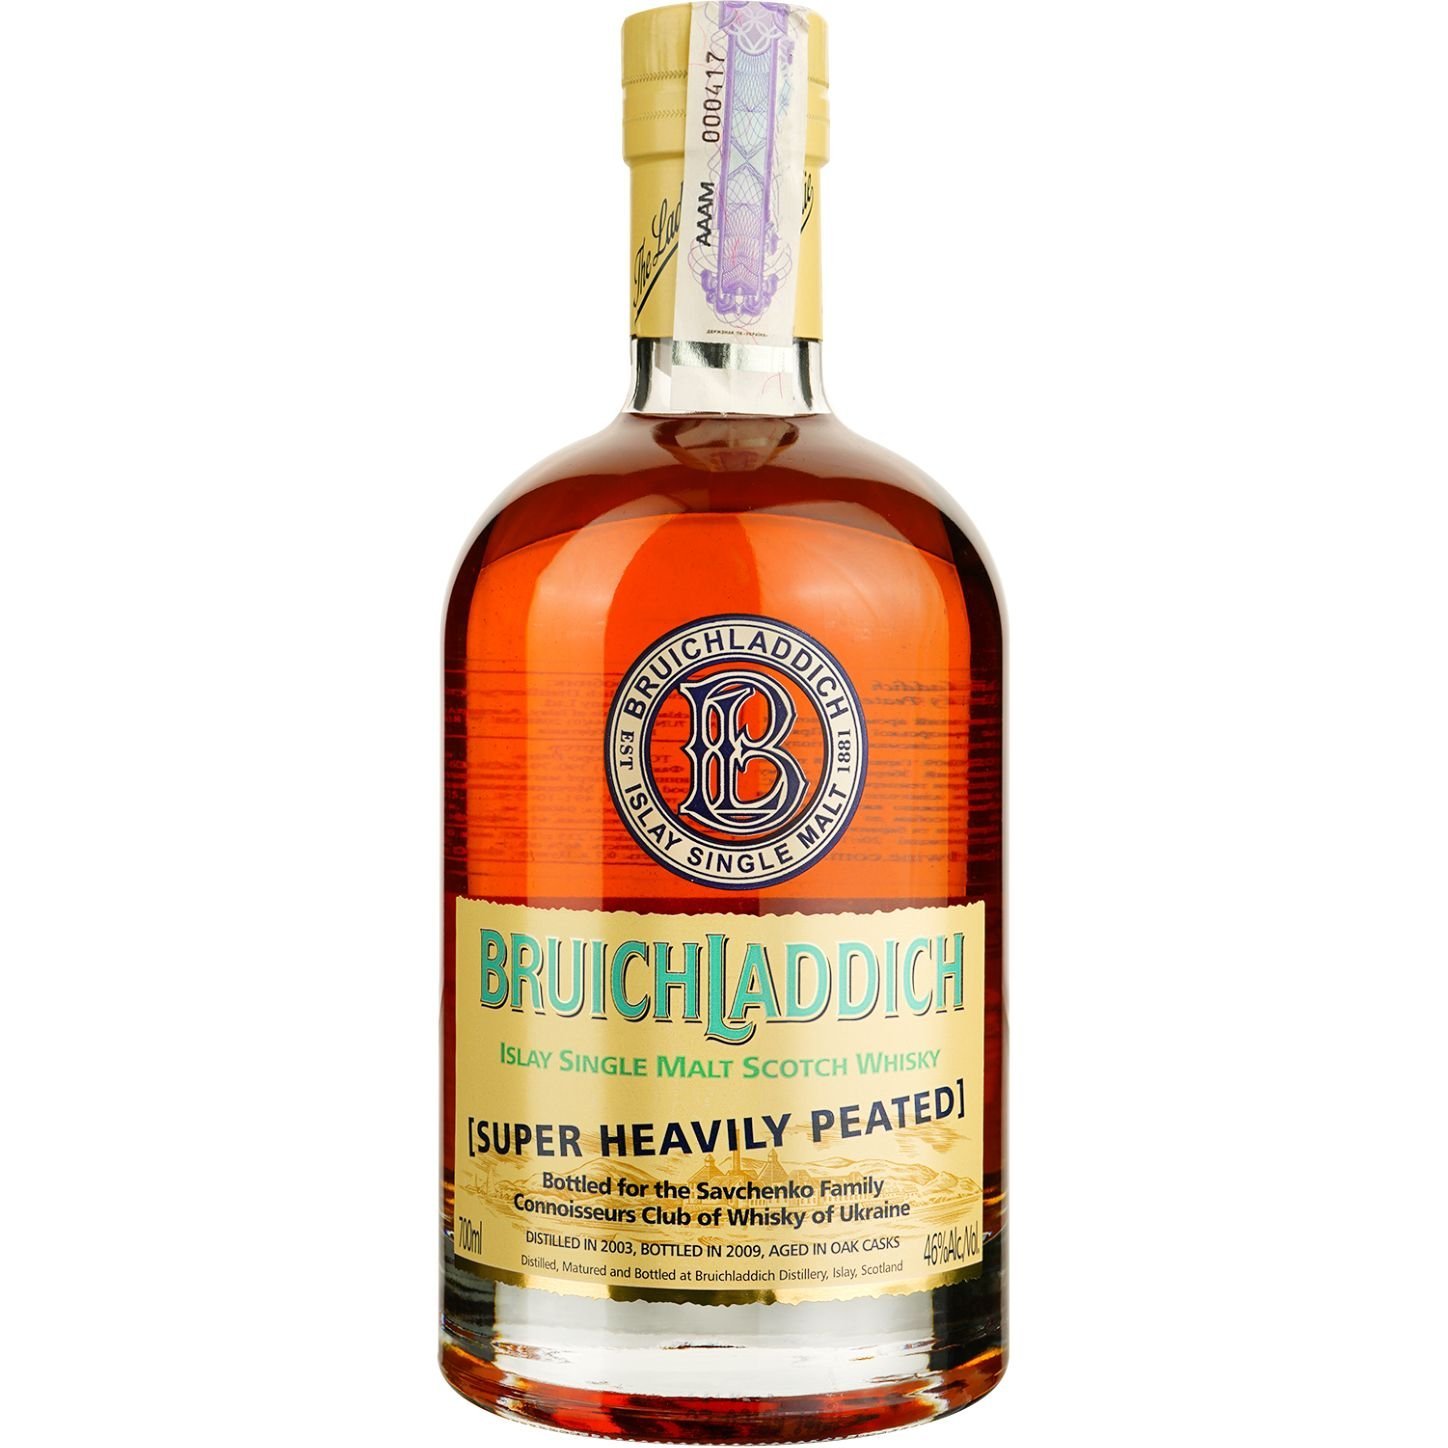 Виски Bruichladdich Super Heavily Peated Single Malt Scotch Whisky, в подарочной упаковке, 46%, 0,7 л - фото 2